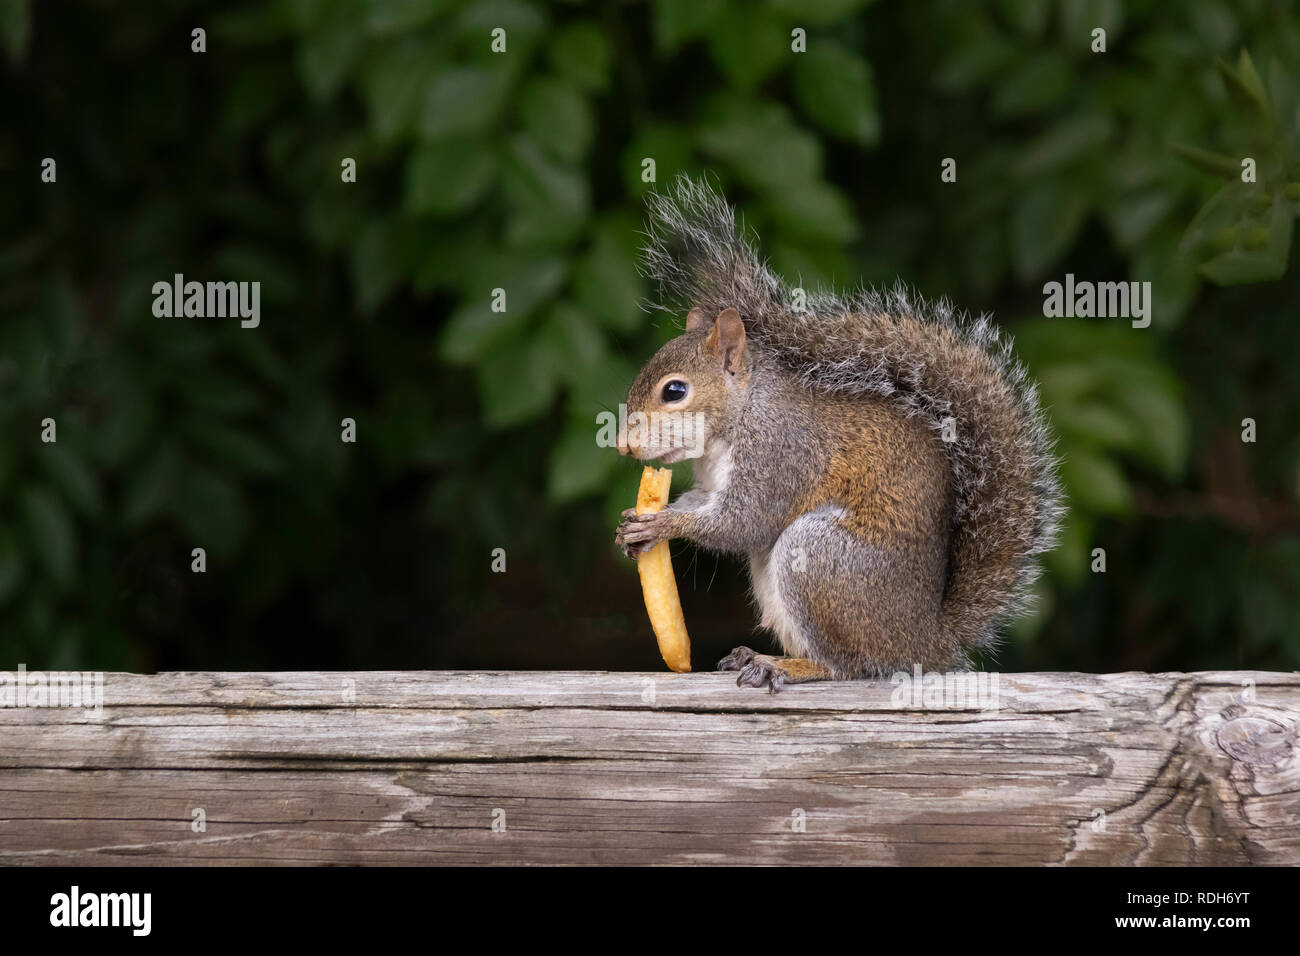 Uno scoiattolo si erge su un ponte ferrovia tranquillamente mangiando una RFI. Tail wrapped up occhi puntati in avanti con il profilo rivolto verso godendo di un trovato patatine fritte. Foto Stock